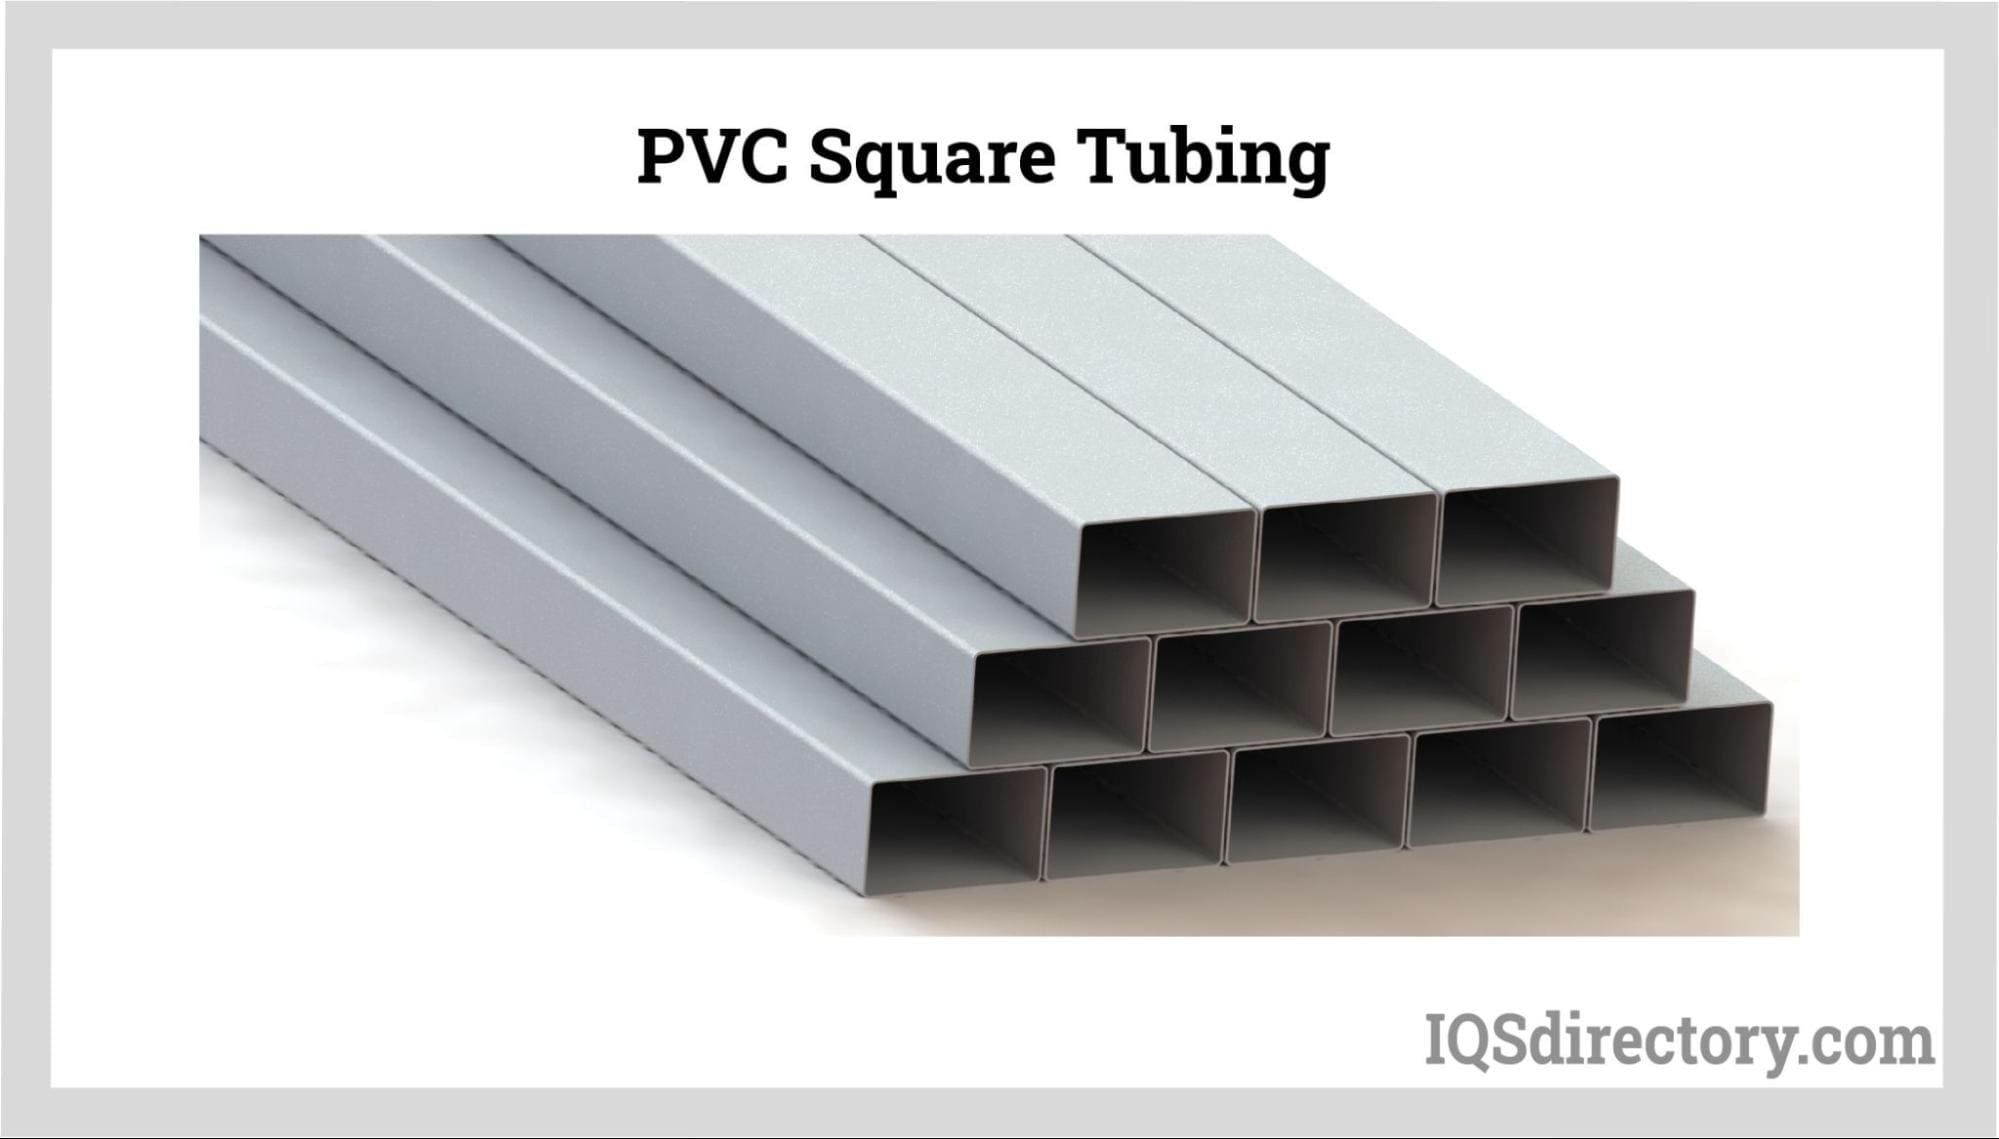 PVC Square Tubing